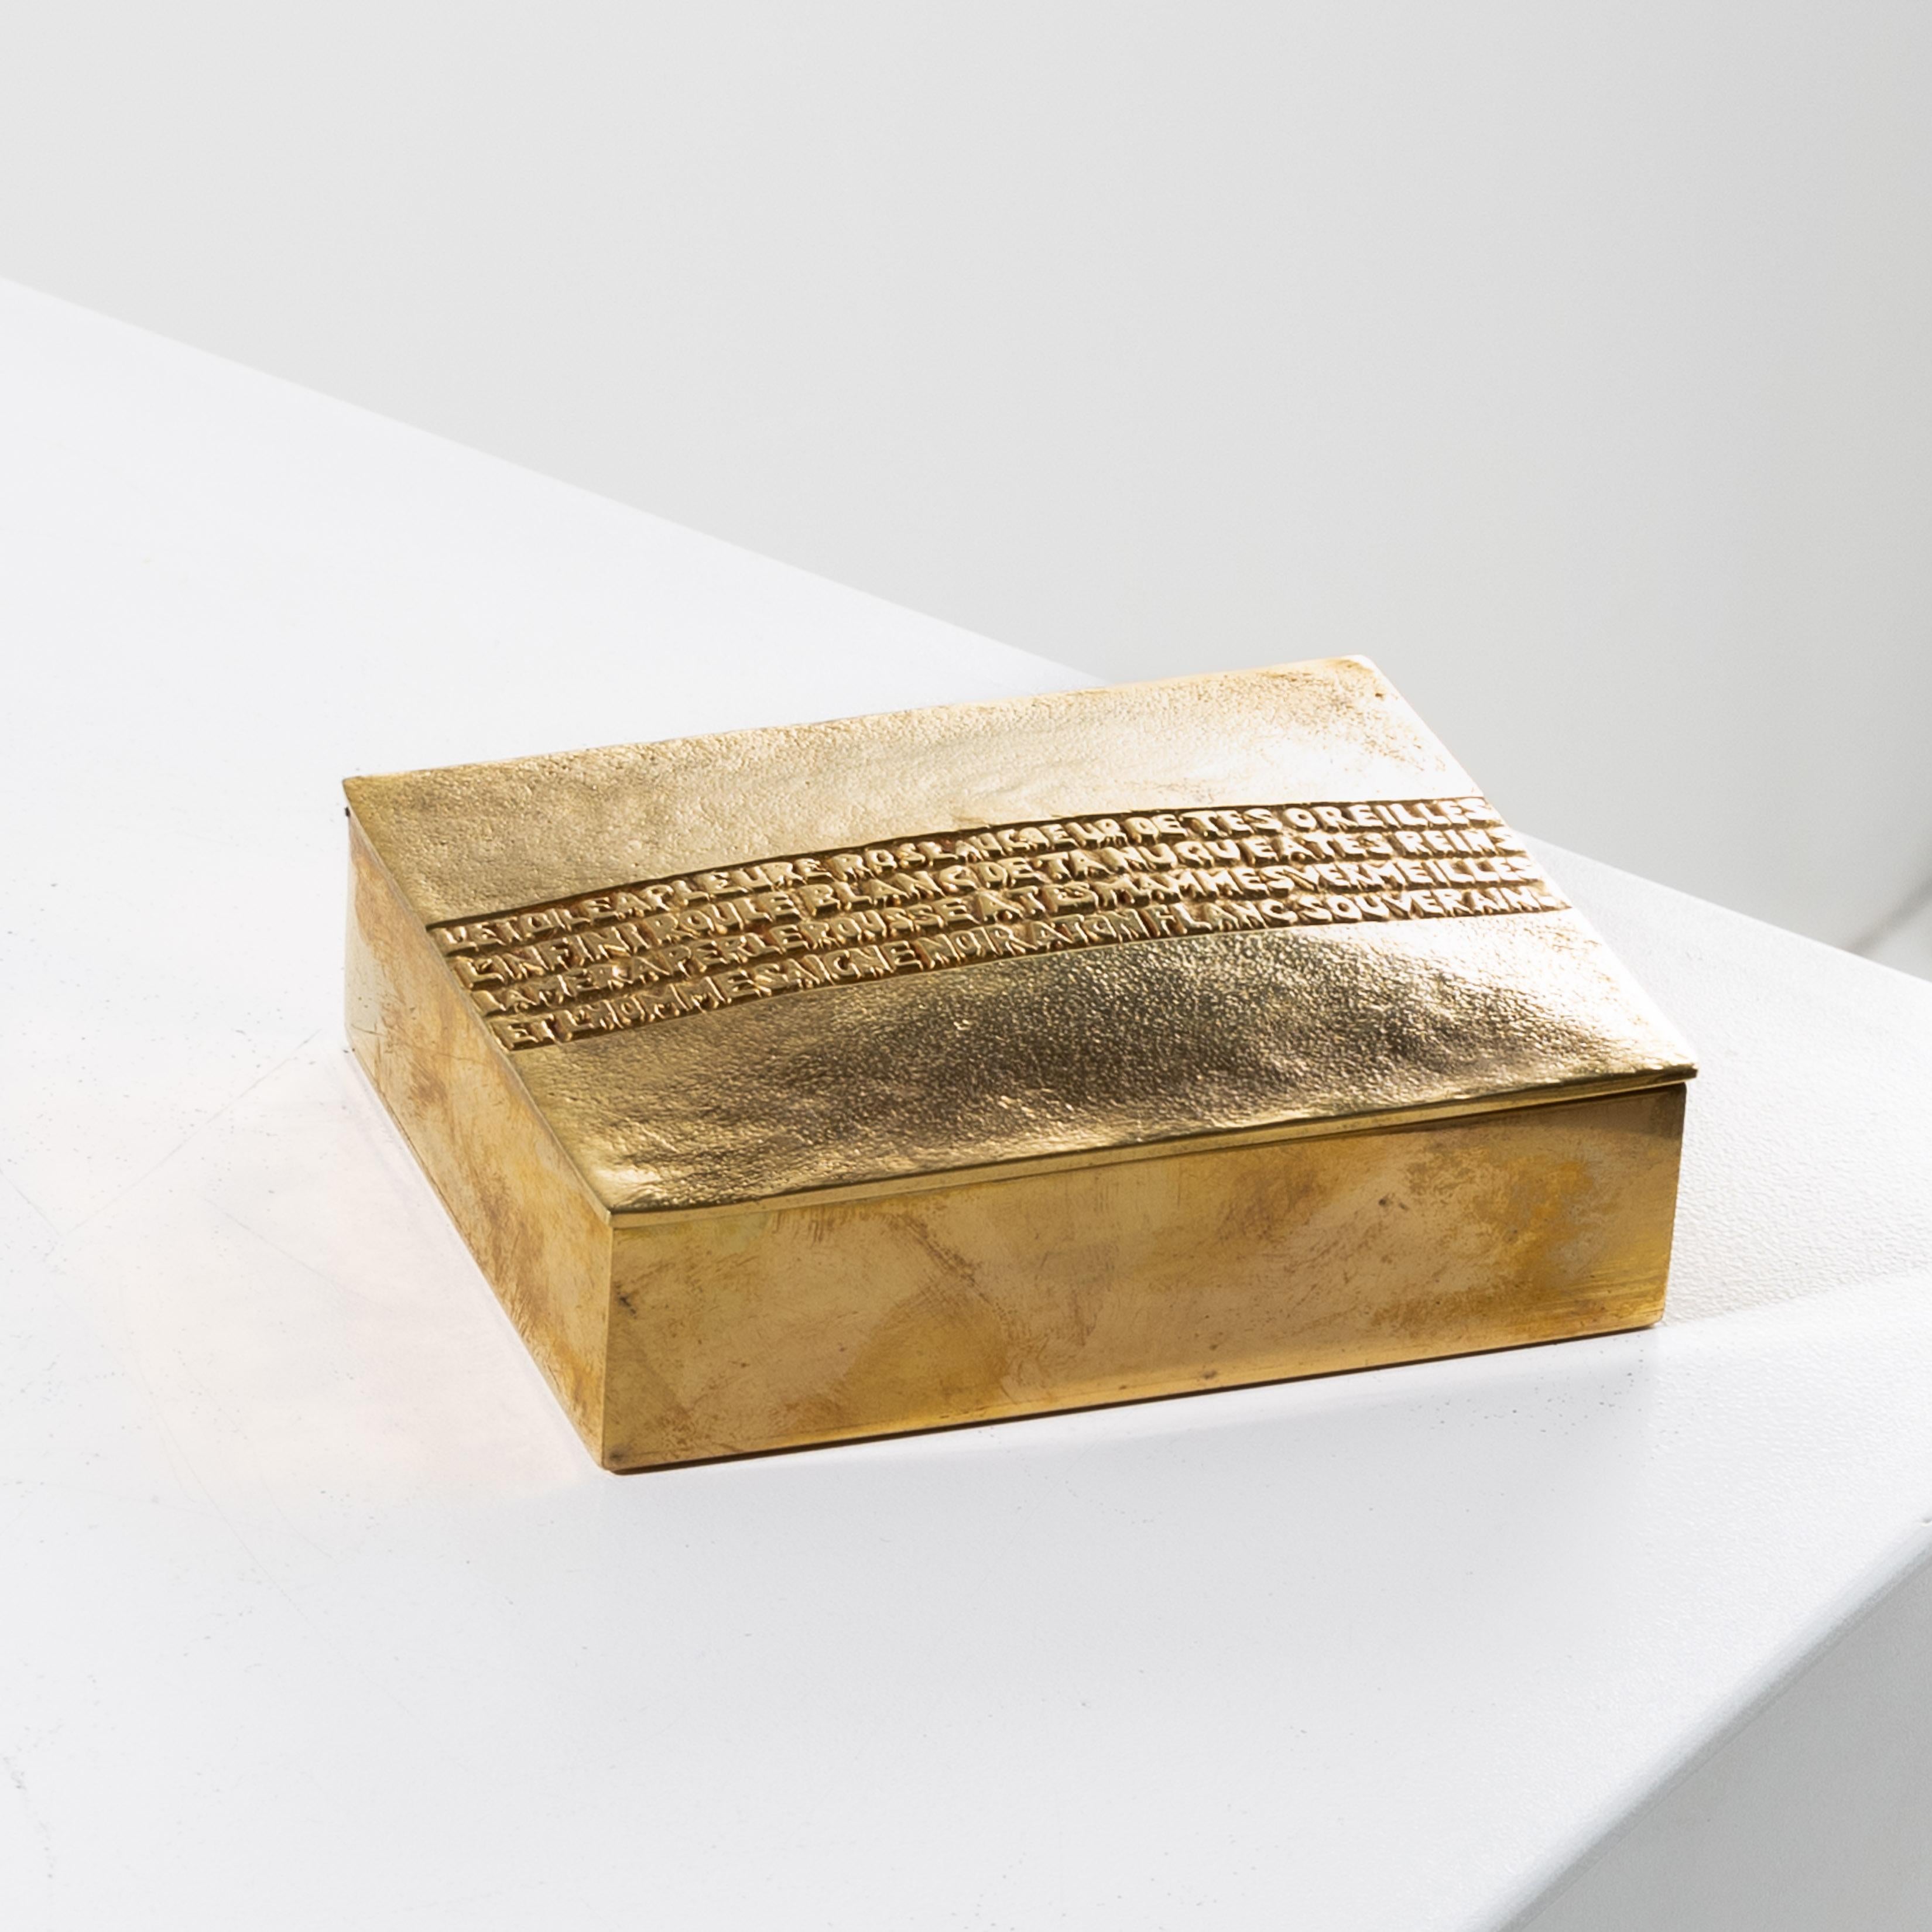 L'étoile a pleuré rose de Line Vautrin.
Rara caja de bronce dorado, con tapa convexa adornada con un poema de Arthur Rimbaud (1854-1891).
Este poema procede de 